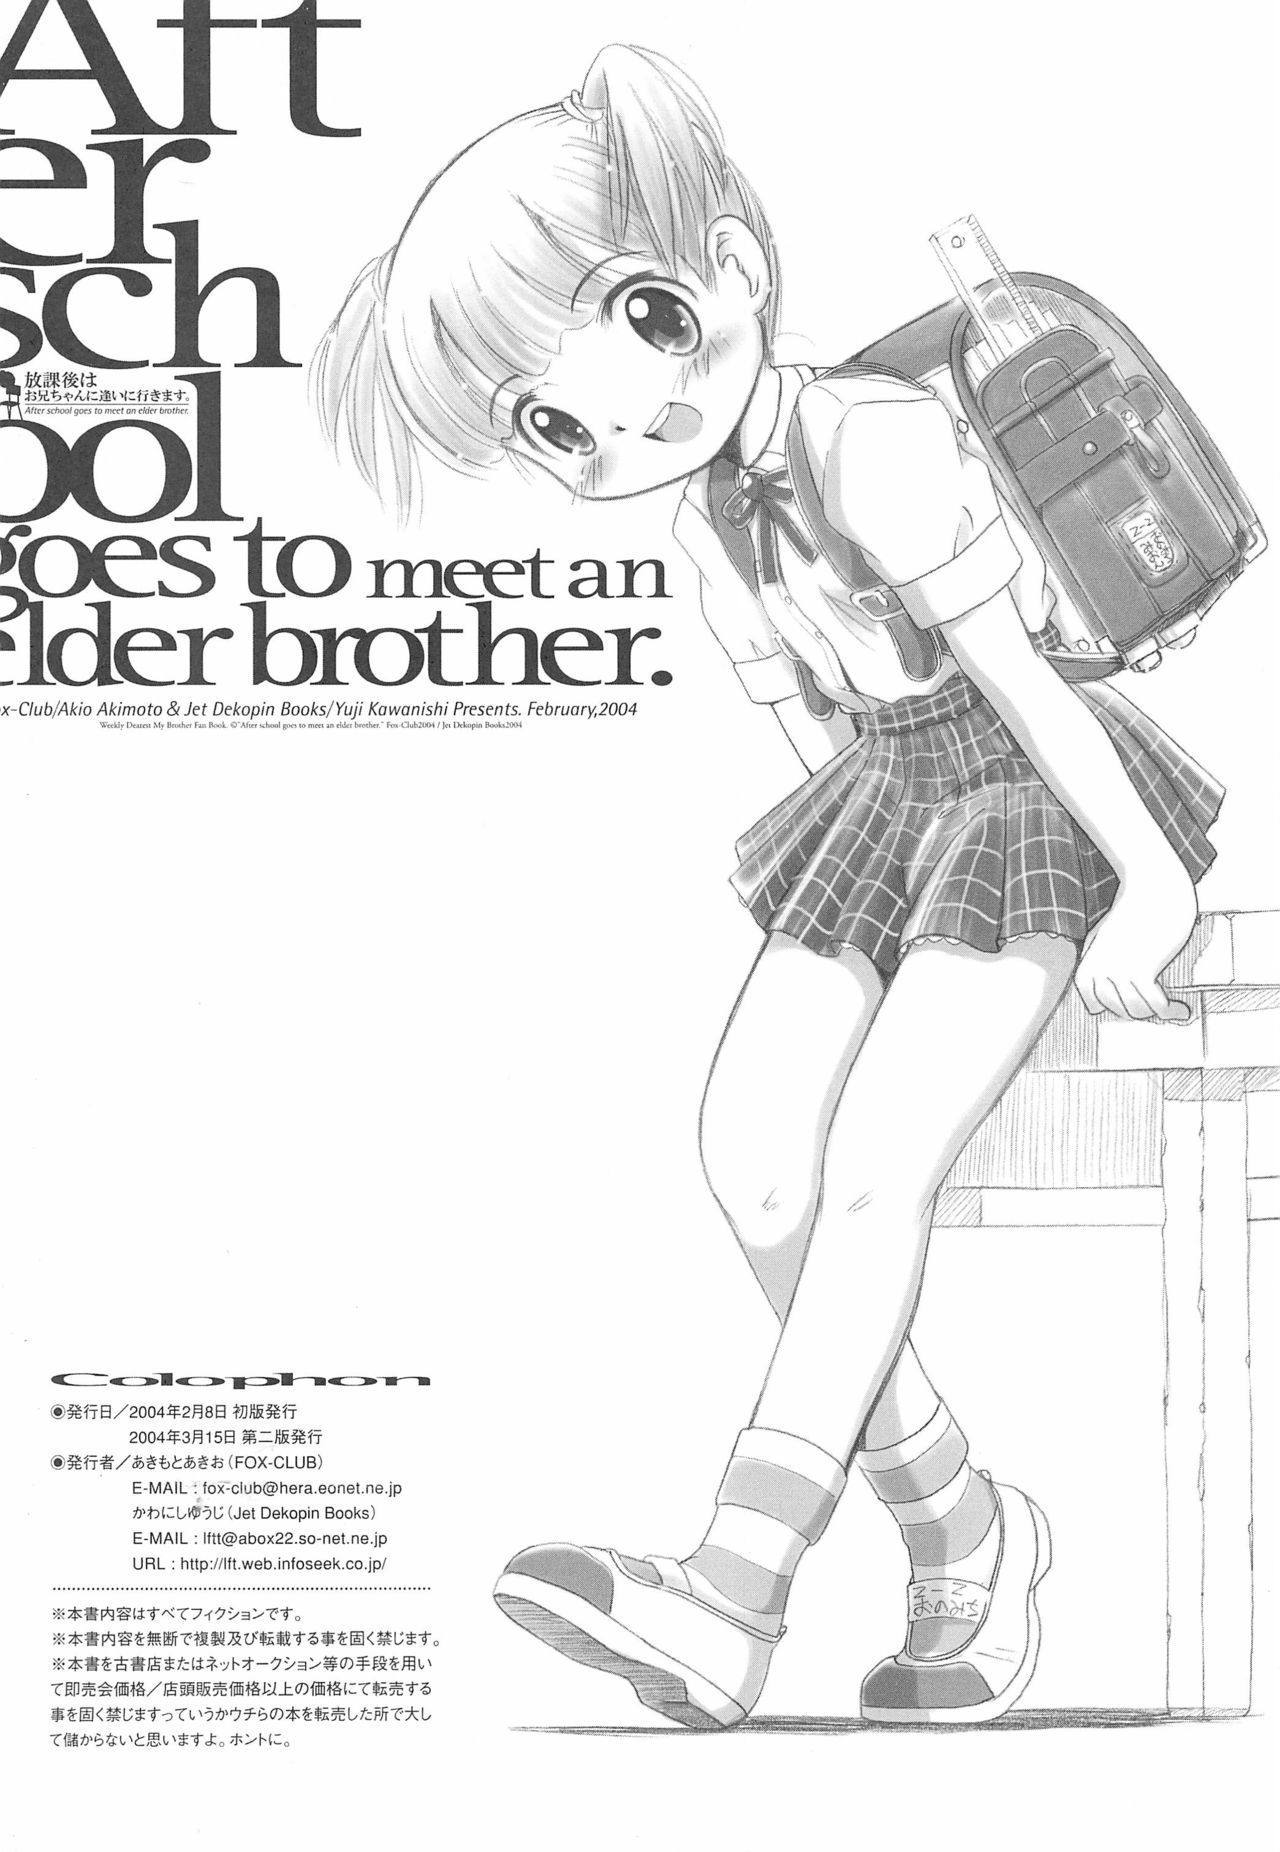 (RAG-FES 05) [FOX-CLUB、JET DEKOPIN BOOKS (あきもとあきお、かわにしゆうじ)] After School Goes To Meet An Elder Brother 放課後はお兄ちゃんに逢いに行きます。 (週刊わたしのおにいちゃん)